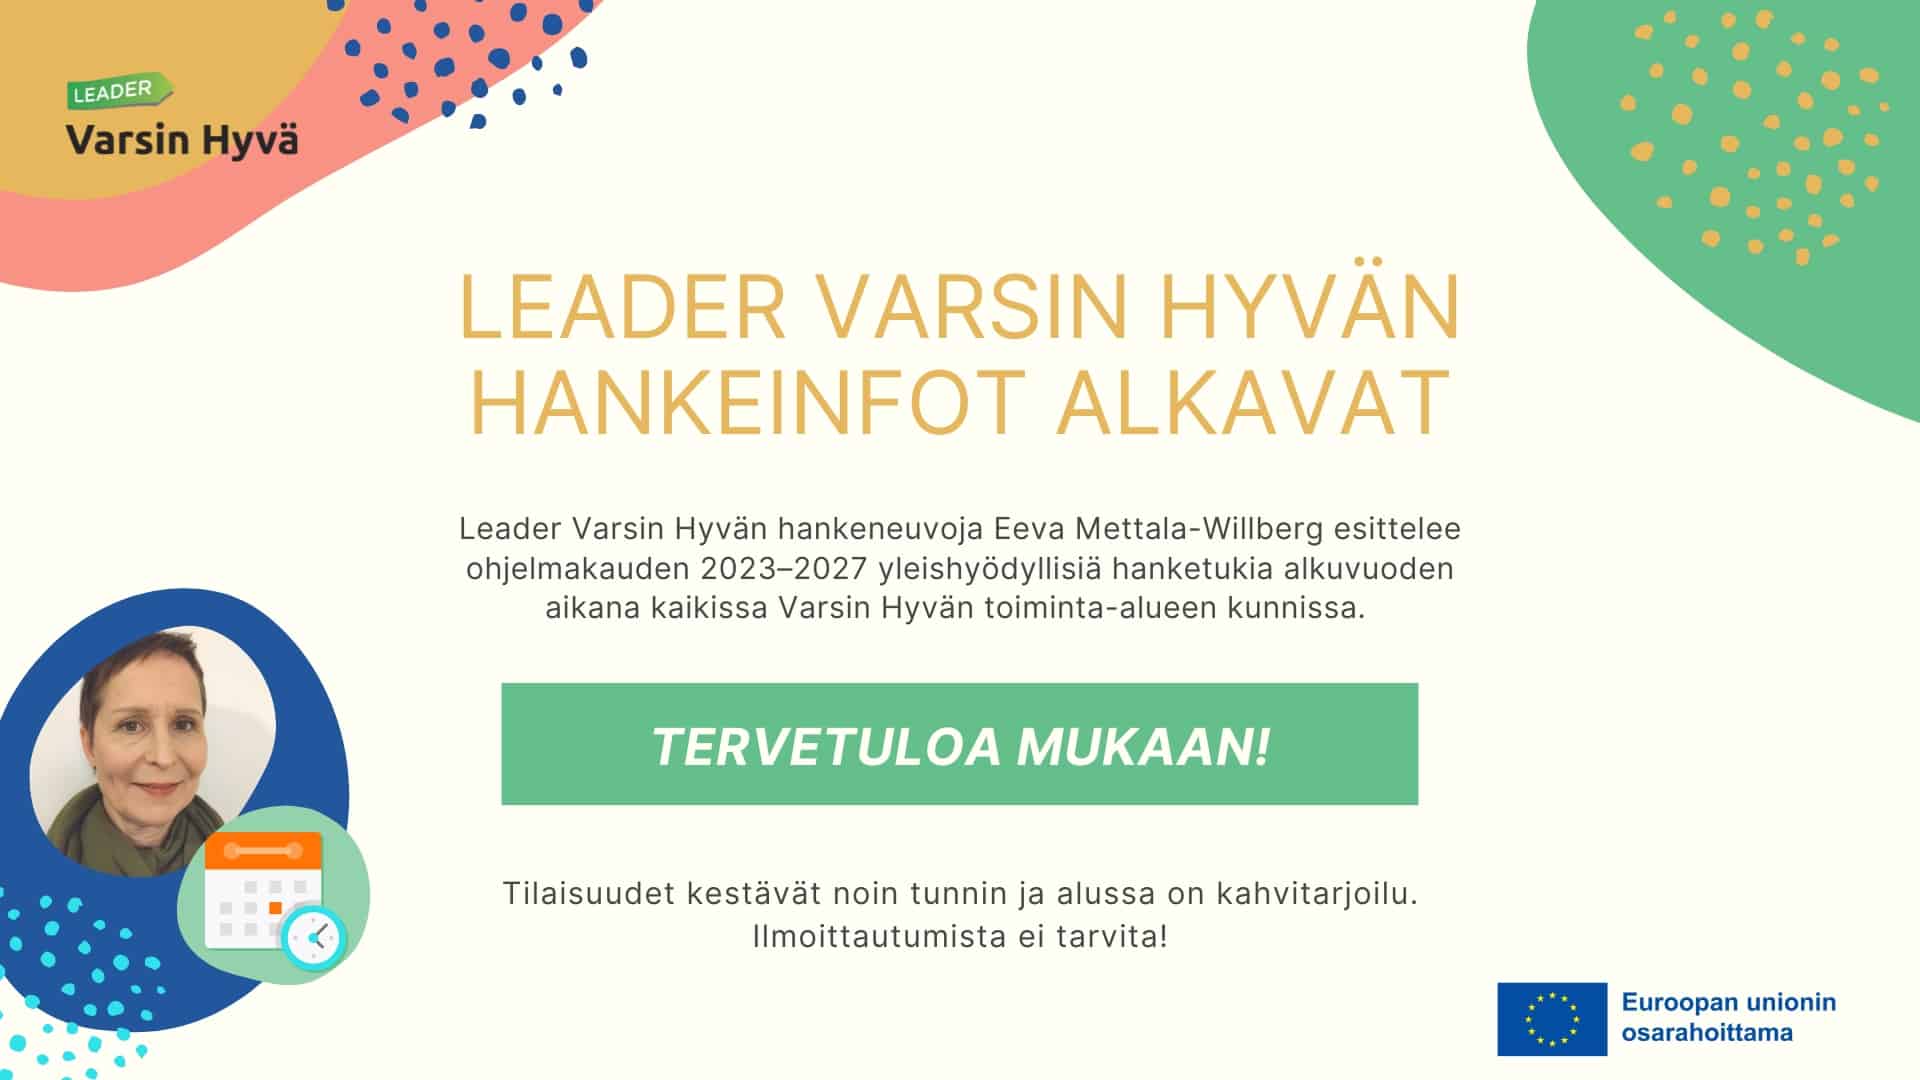 Mainoskuva, jossa on isolla teksti: Leader Varsin Hyvän hankeinfot alkavat! Vasemmalla Eeva Mettala-Willbergin kuva.